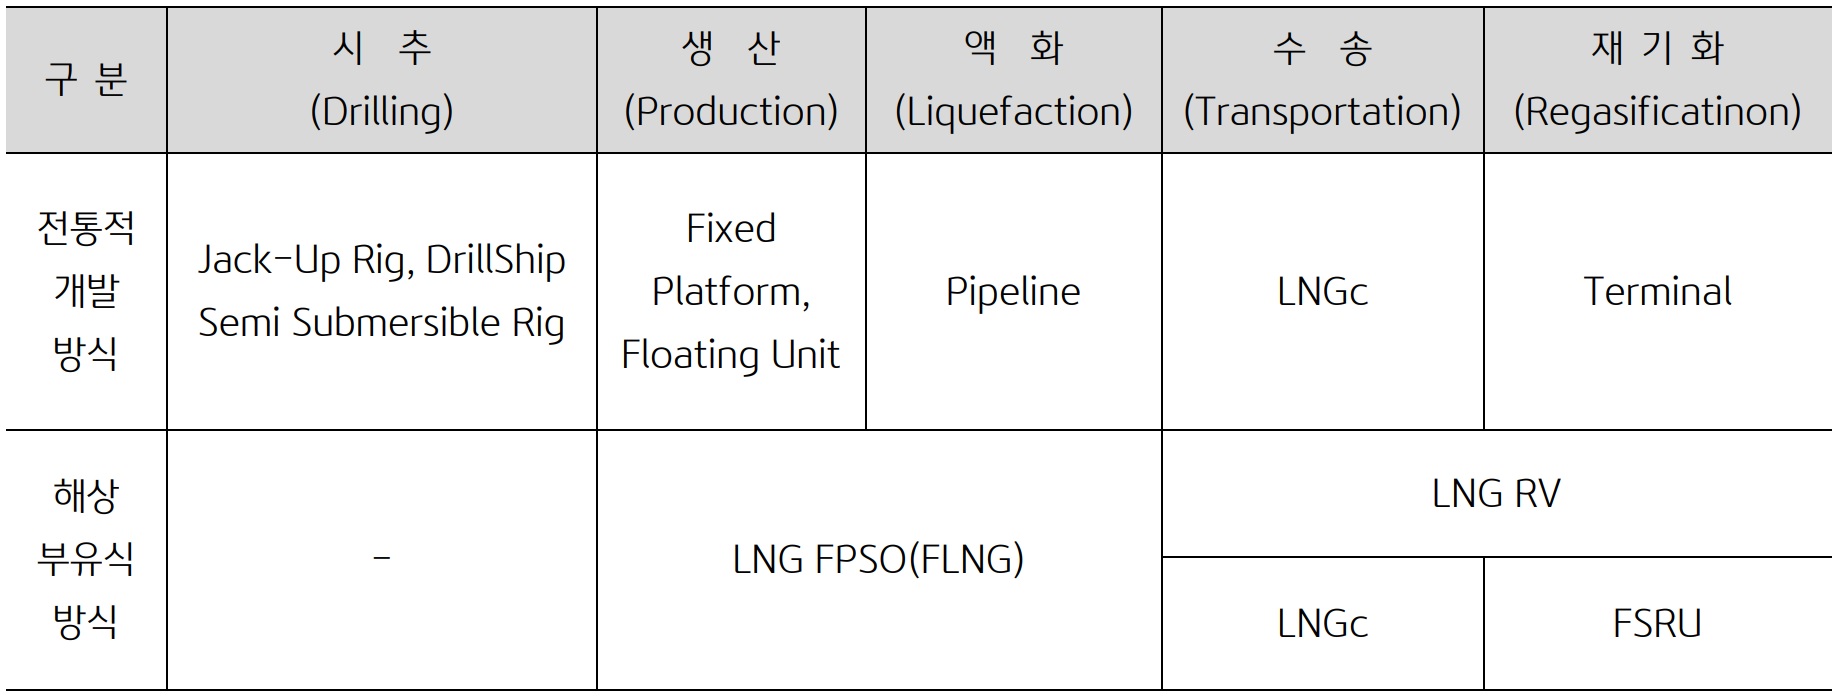 'LNG' 생산에 있어서 전통적인 개발 방식과 해상 부유식 방식의 차이점을 나타낸 표. 